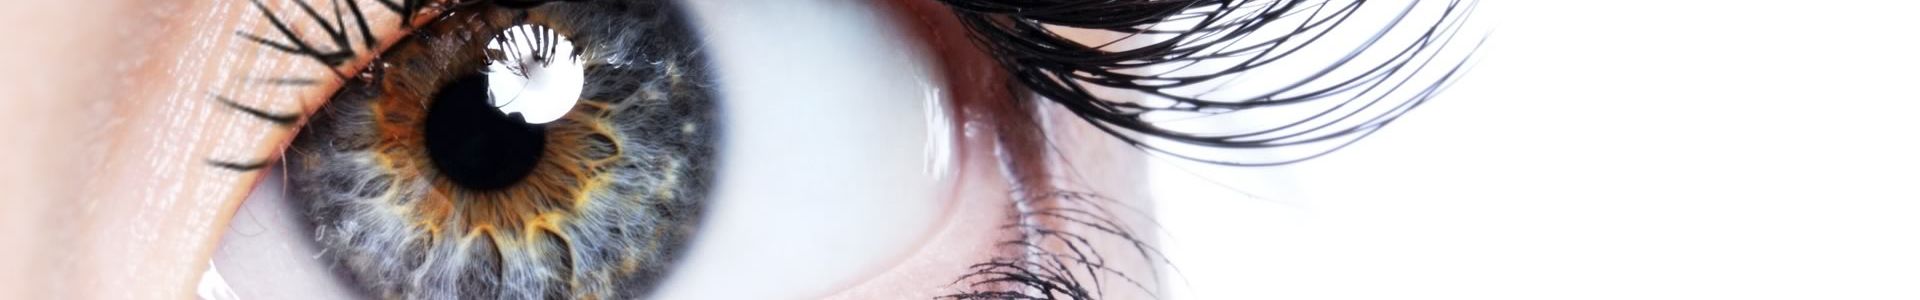 EMDR - Desensibilización y Reprocesamiento por los Movimientos Oculares